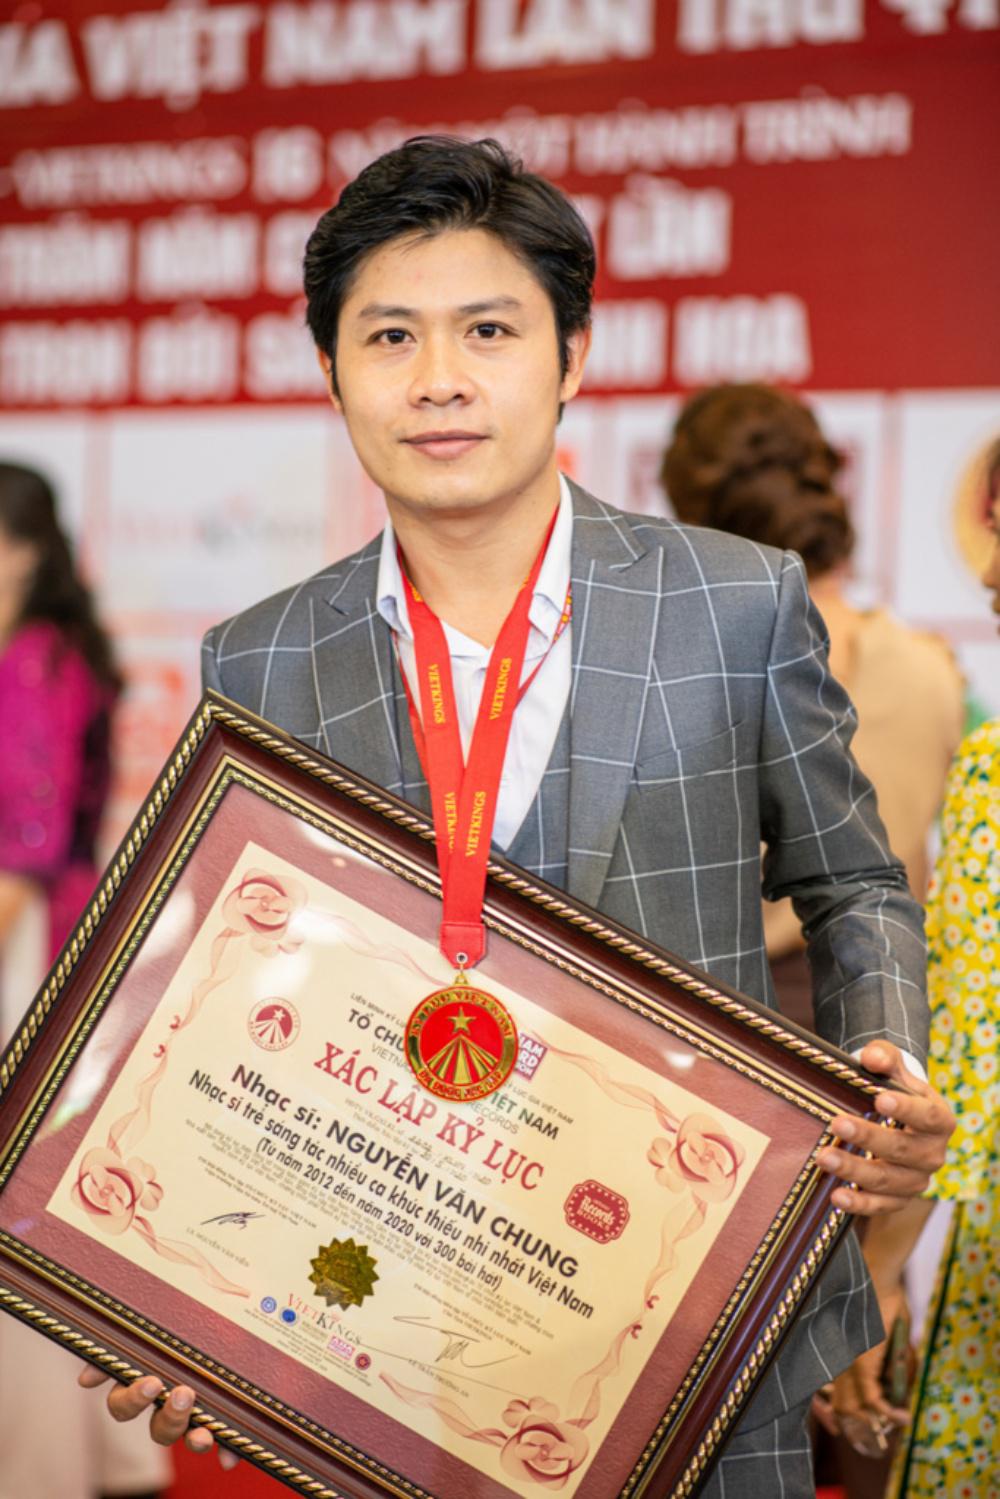 Nguyễn Văn Chung hạnh phúc khi nhận Kỷ lục Việt Nam cho sự nghiệp sáng tác - 2